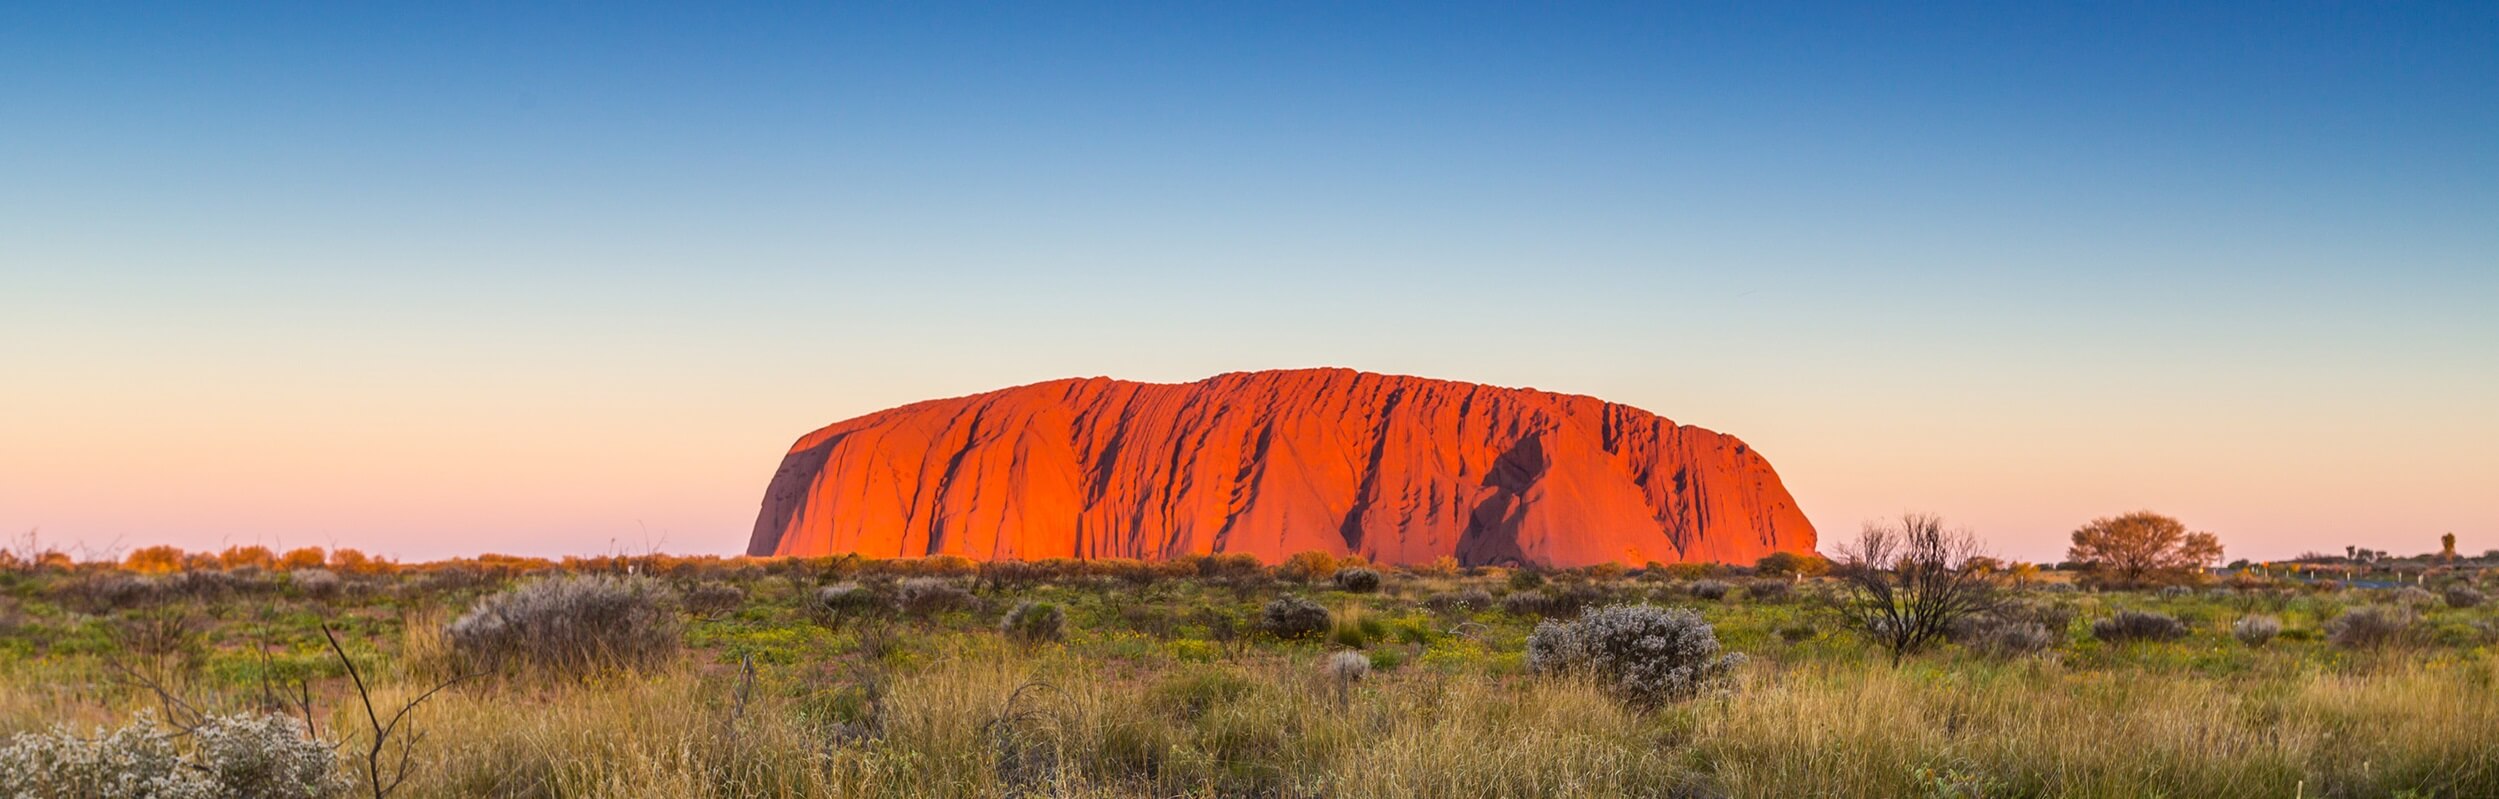 How can you see Uluru?